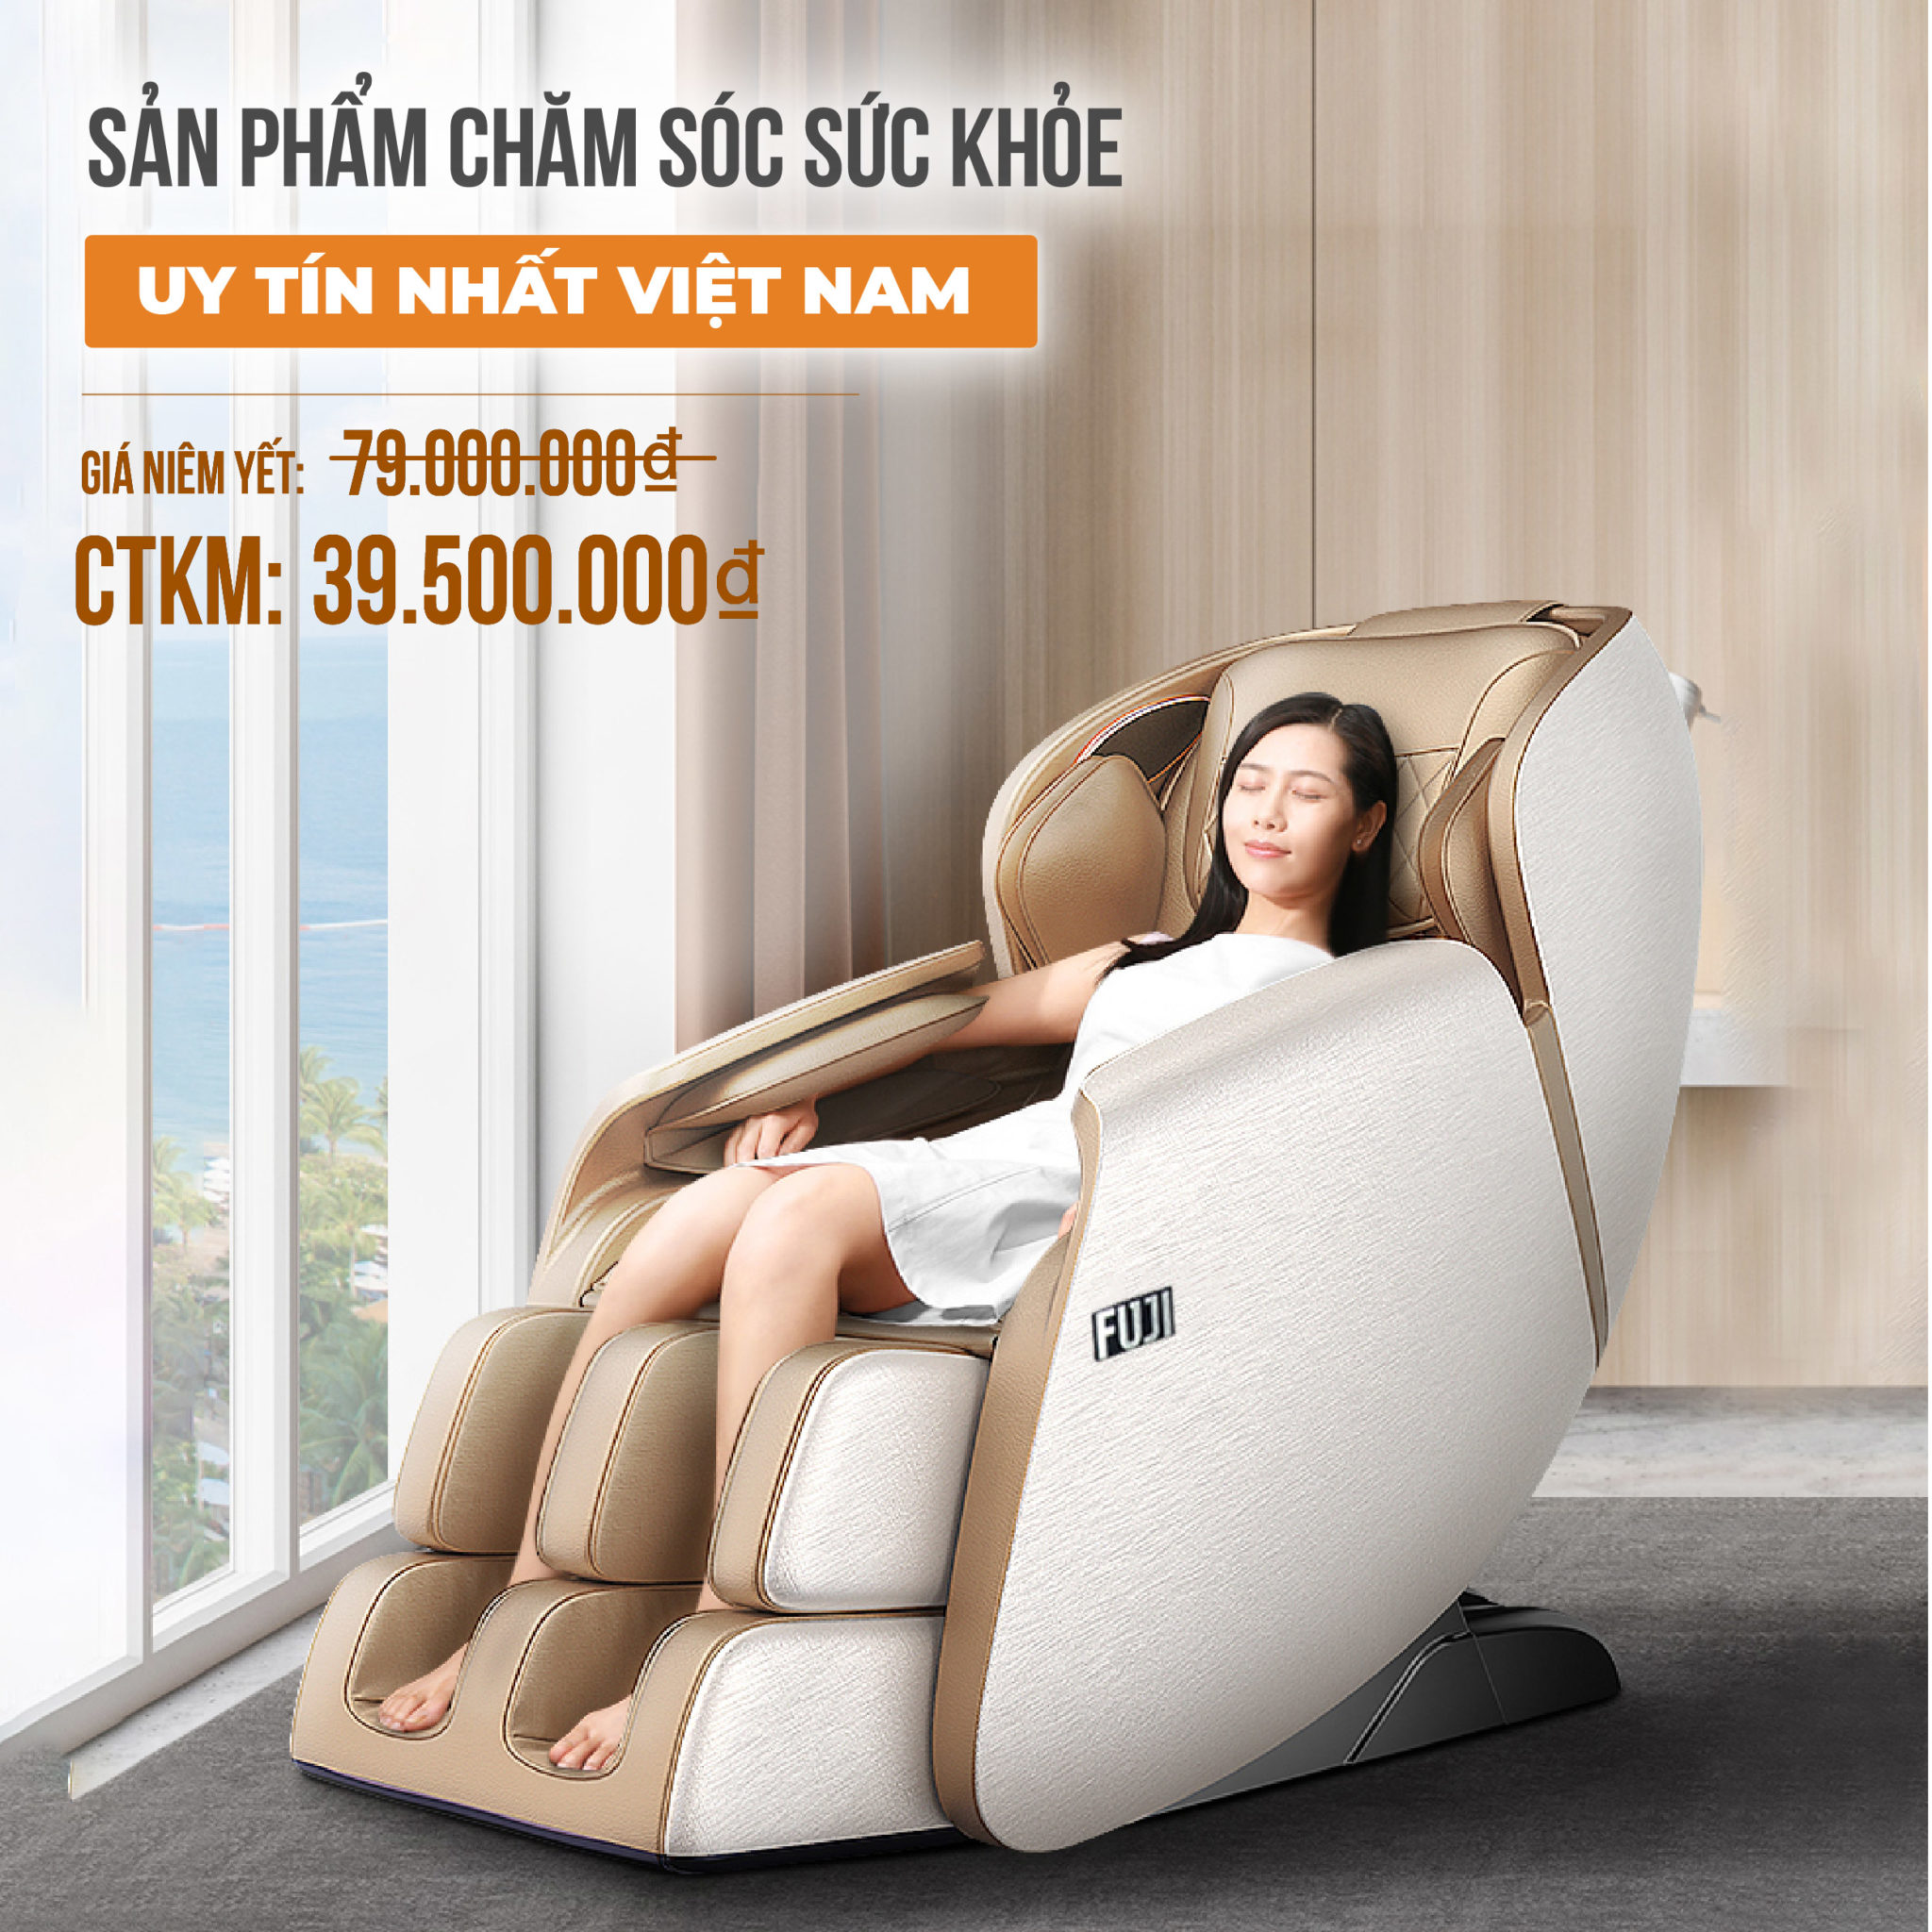 Fuji Luxury - Ghế massage giá rẻ uy tín tại Việt Nam